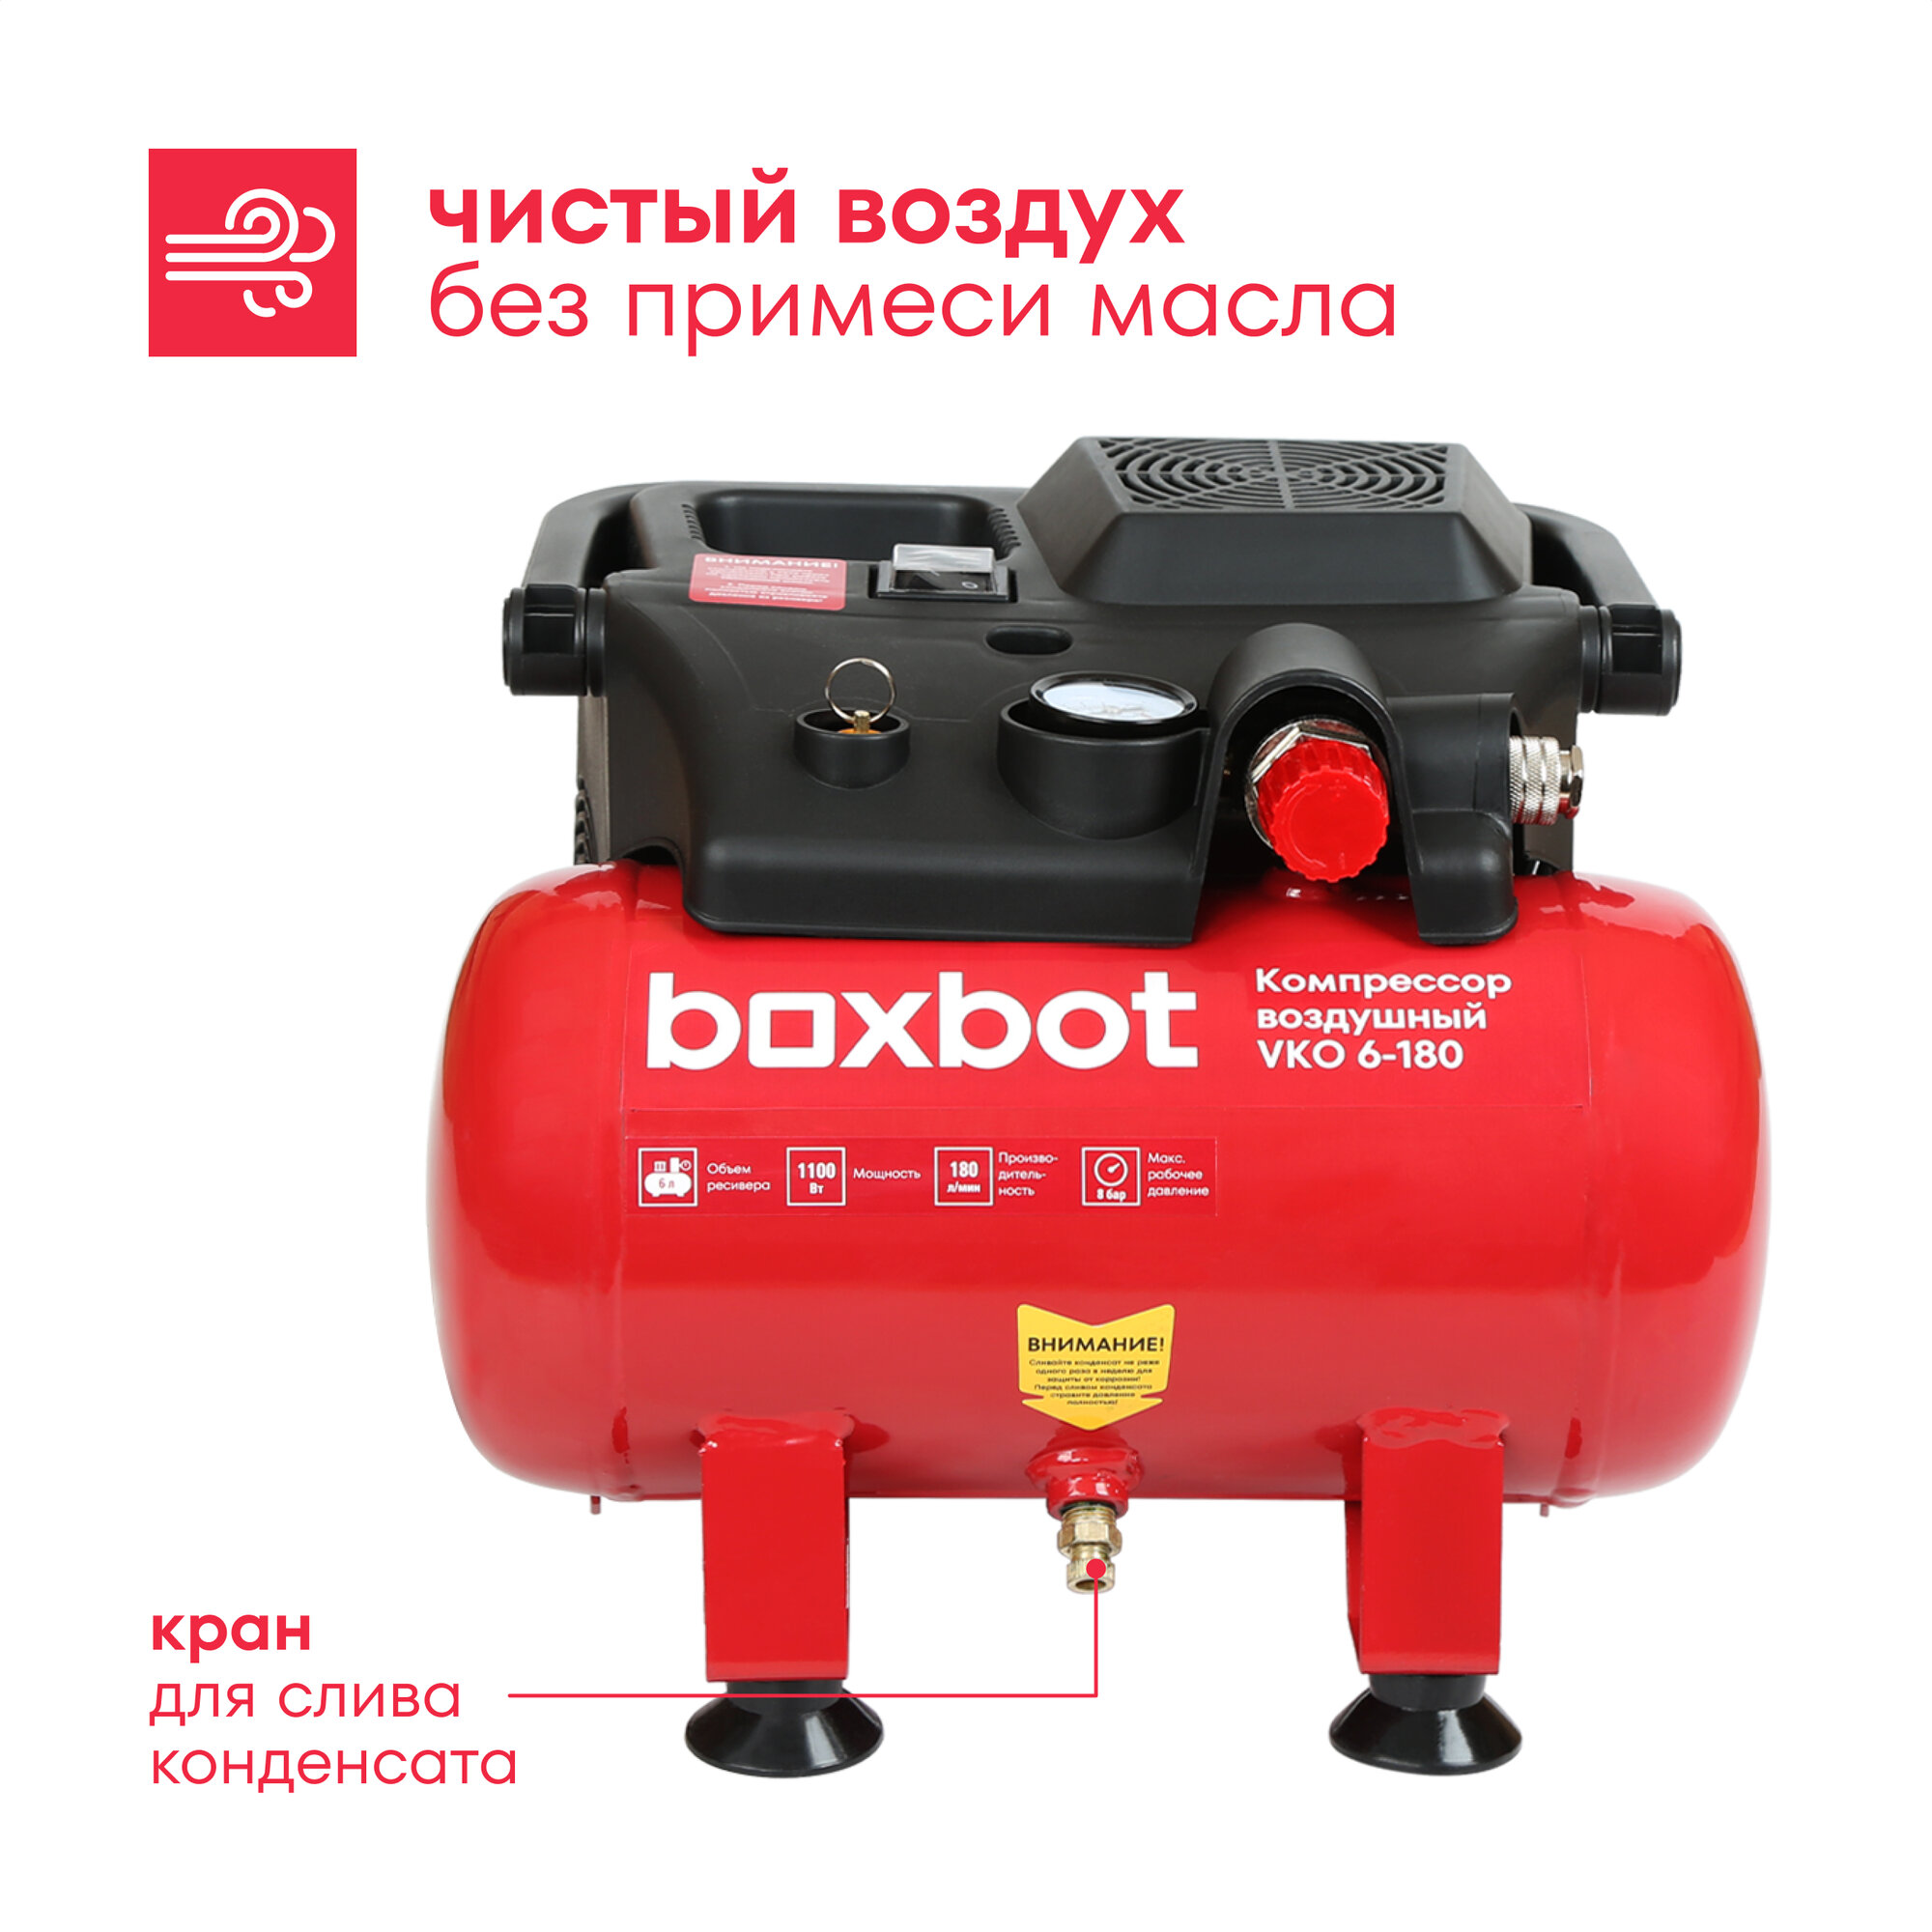 Компрессор безмасляный компактный Boxbot, 6 л, 180 л/мин, быстросъемный коннектор, VKO 6-180